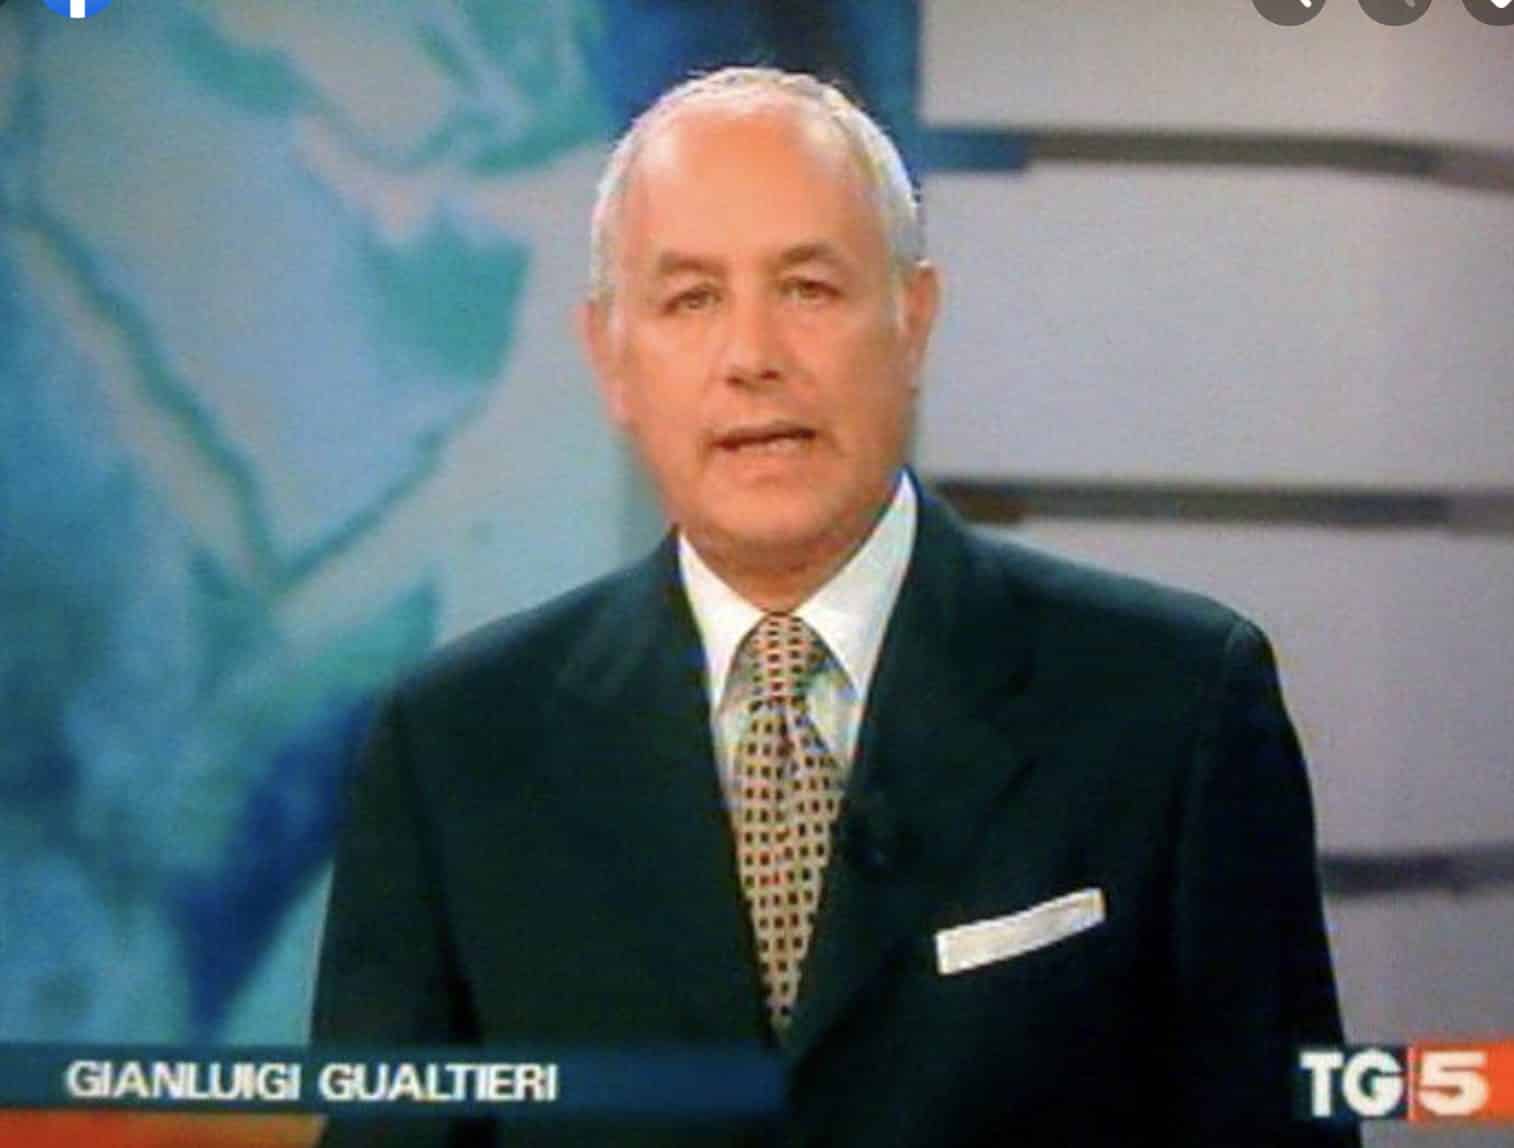 E’ morto Gianluigi Gualtieri, noto giornalista e conduttore di tg5, aveva 59 anni